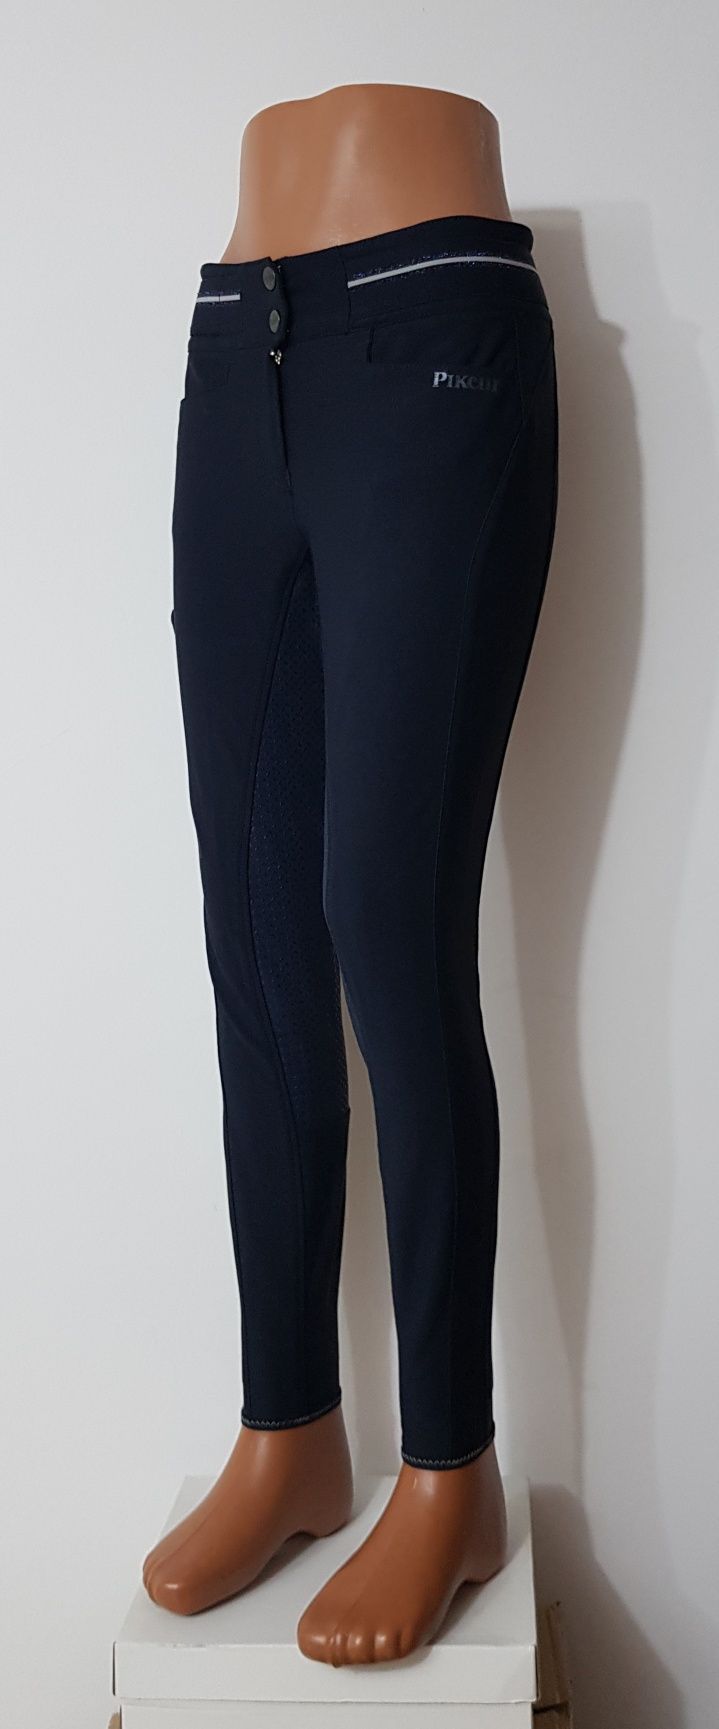 Pantaloni echităție, călarie Pikeur Calanja Grip, model nou, măsura 38